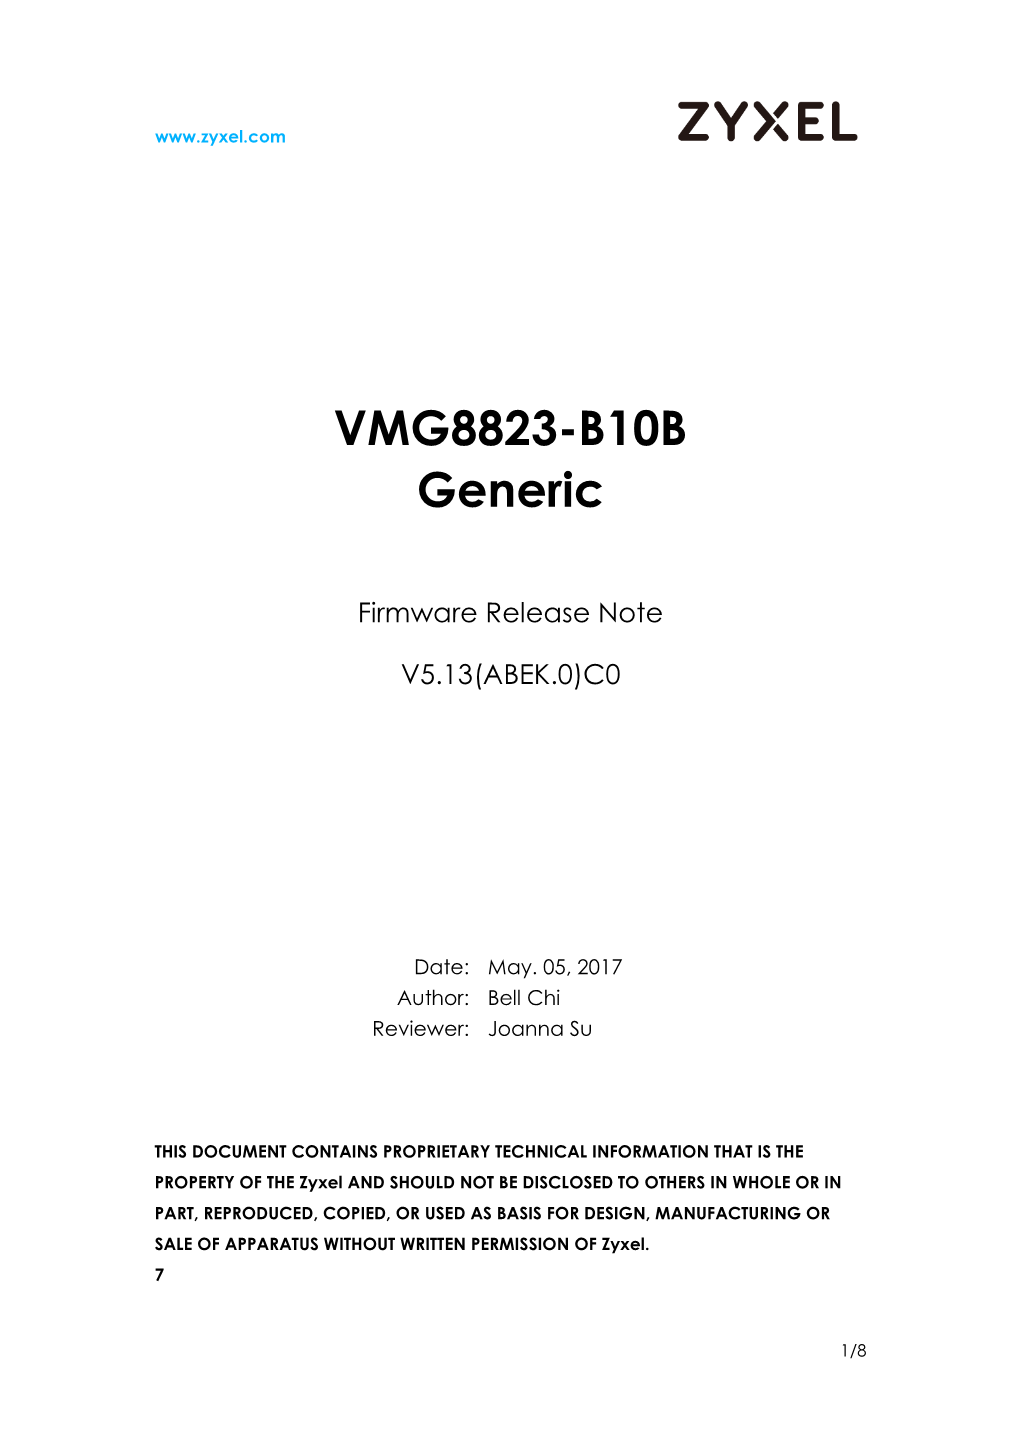 VMG8823-B10B Generic